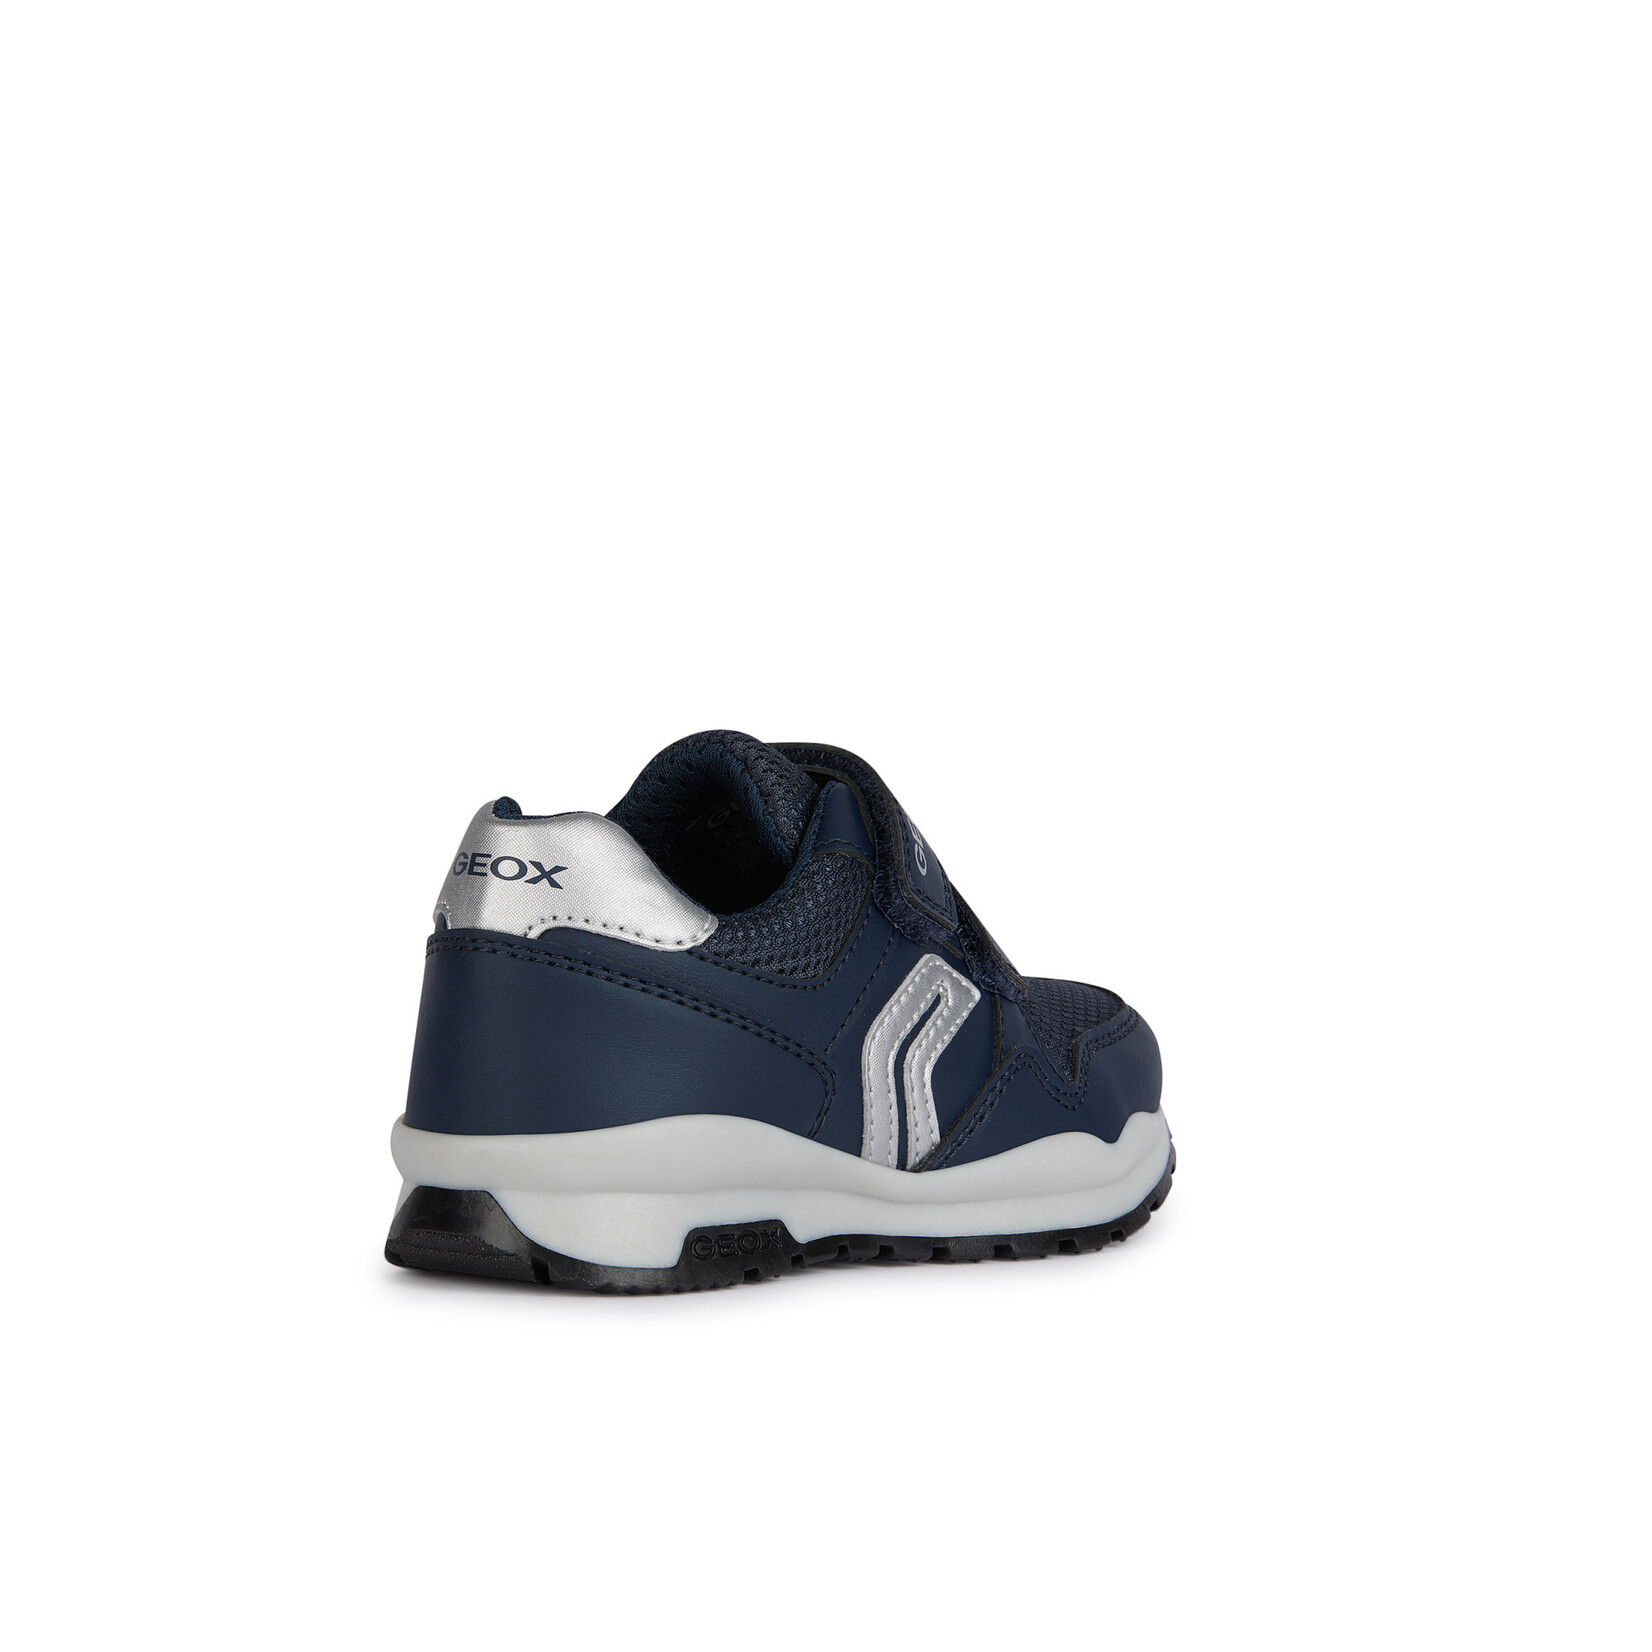 Geox GEOX - Chaussures de sport en cuir synthétique et filet 'Pavel - Marine'